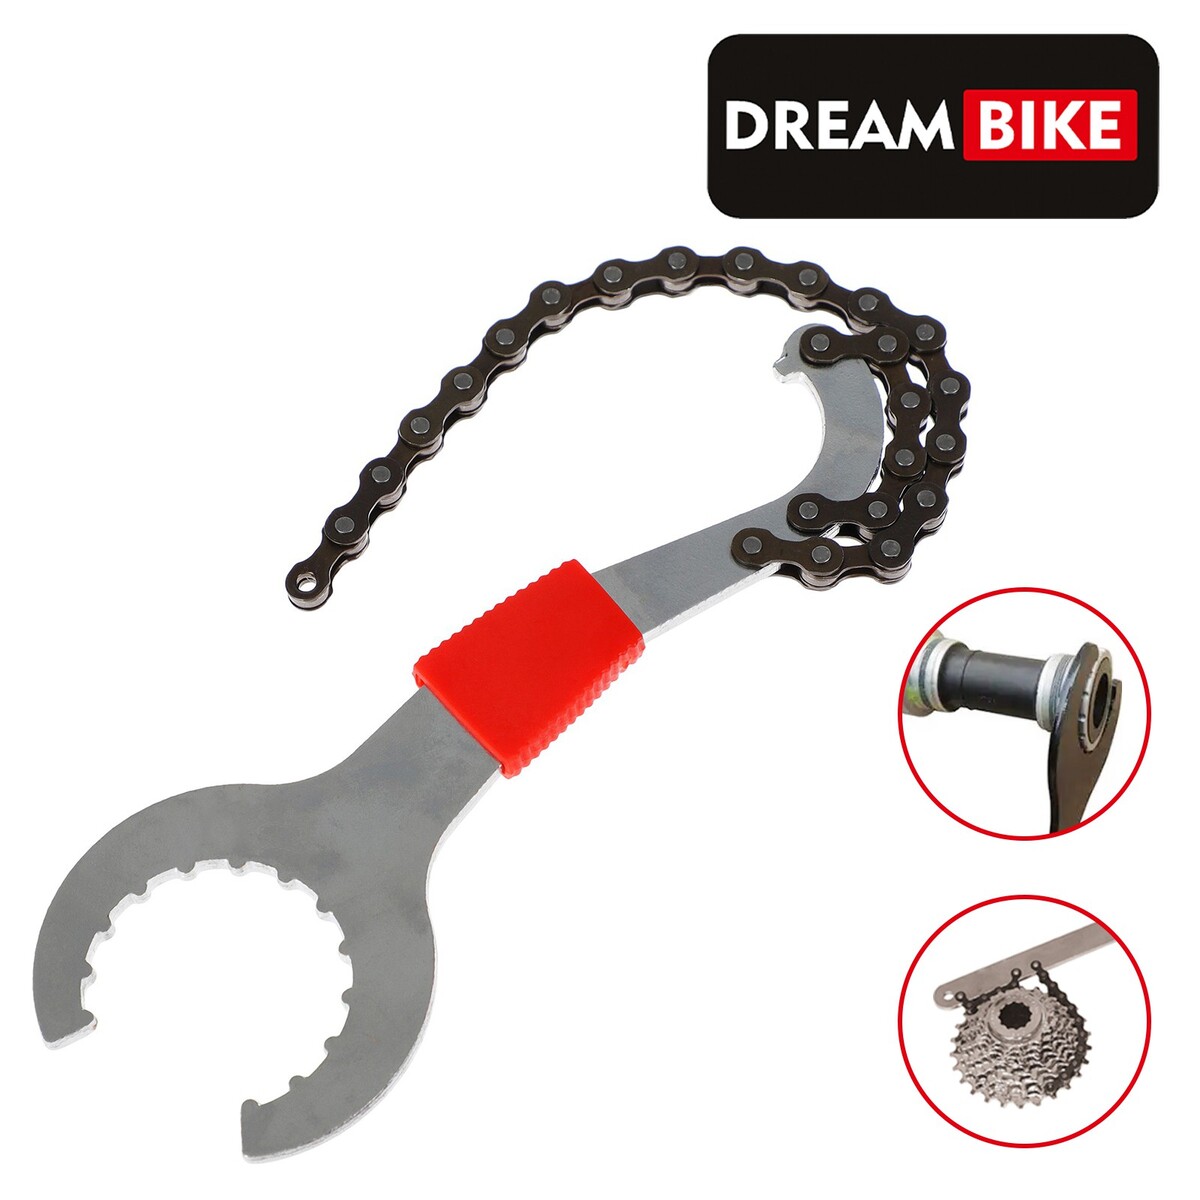 Съемник каретки dream bike, с хлыстом для кассеты съёмник каретки с ключом для левого шатуна dream bike